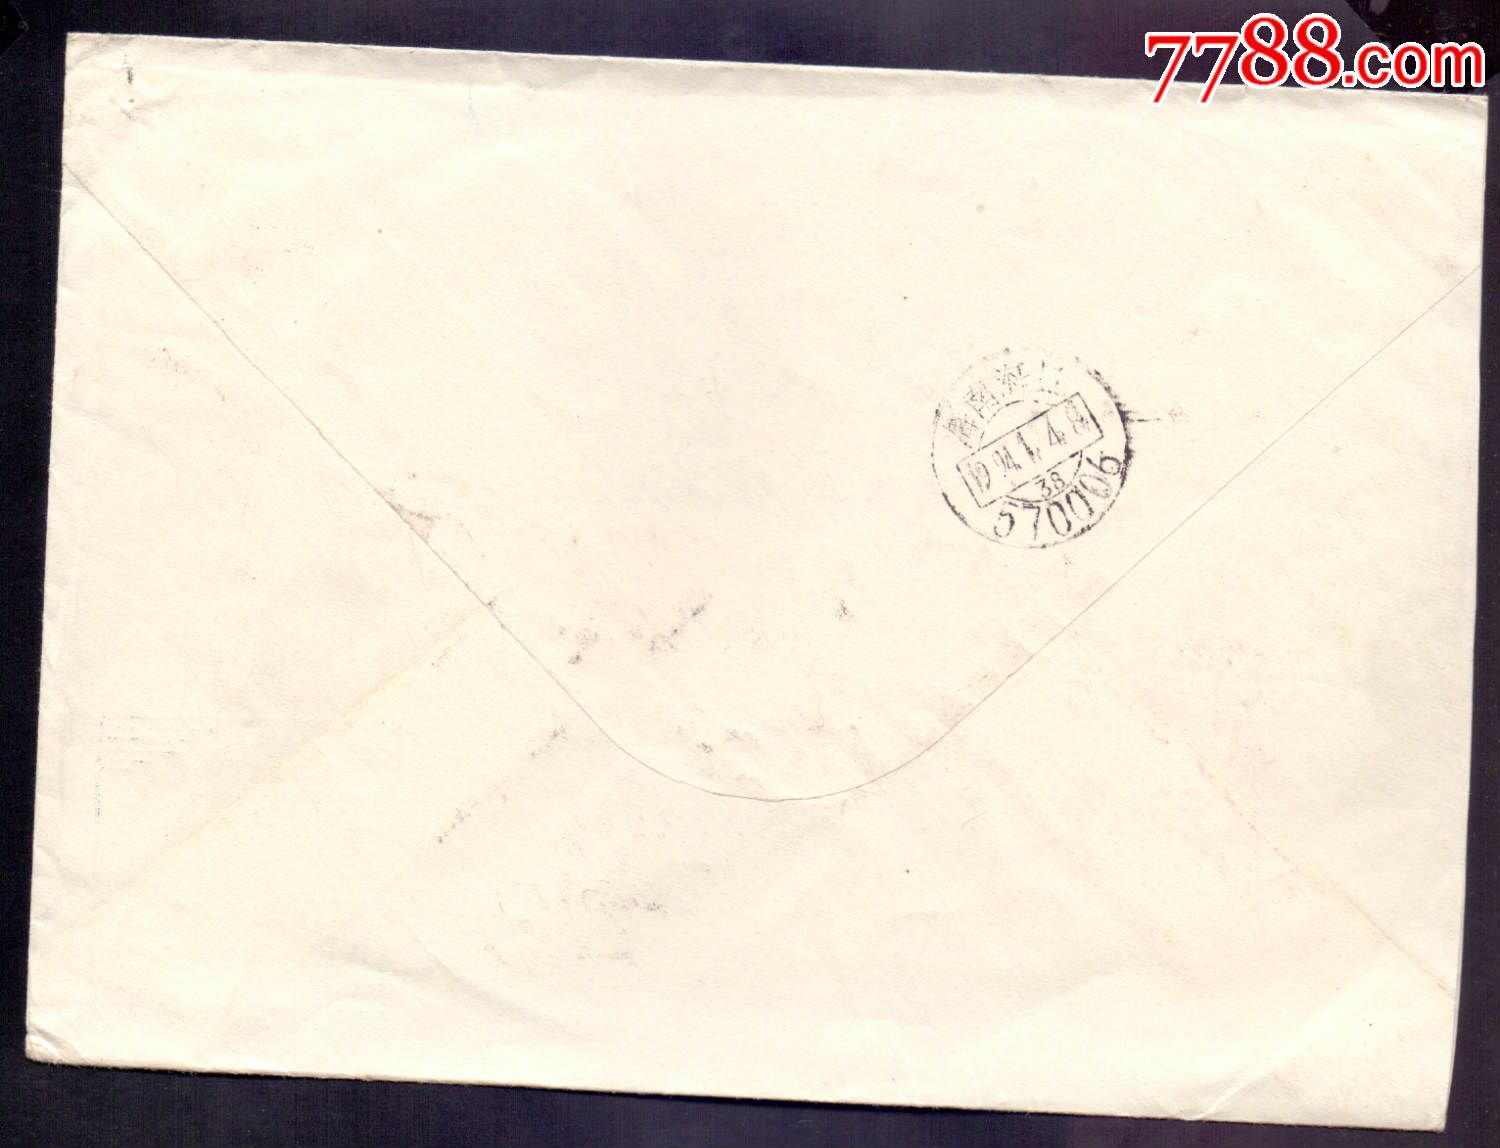 1993-5邮票封-江苏南京邮编戳-价格:15元-se2